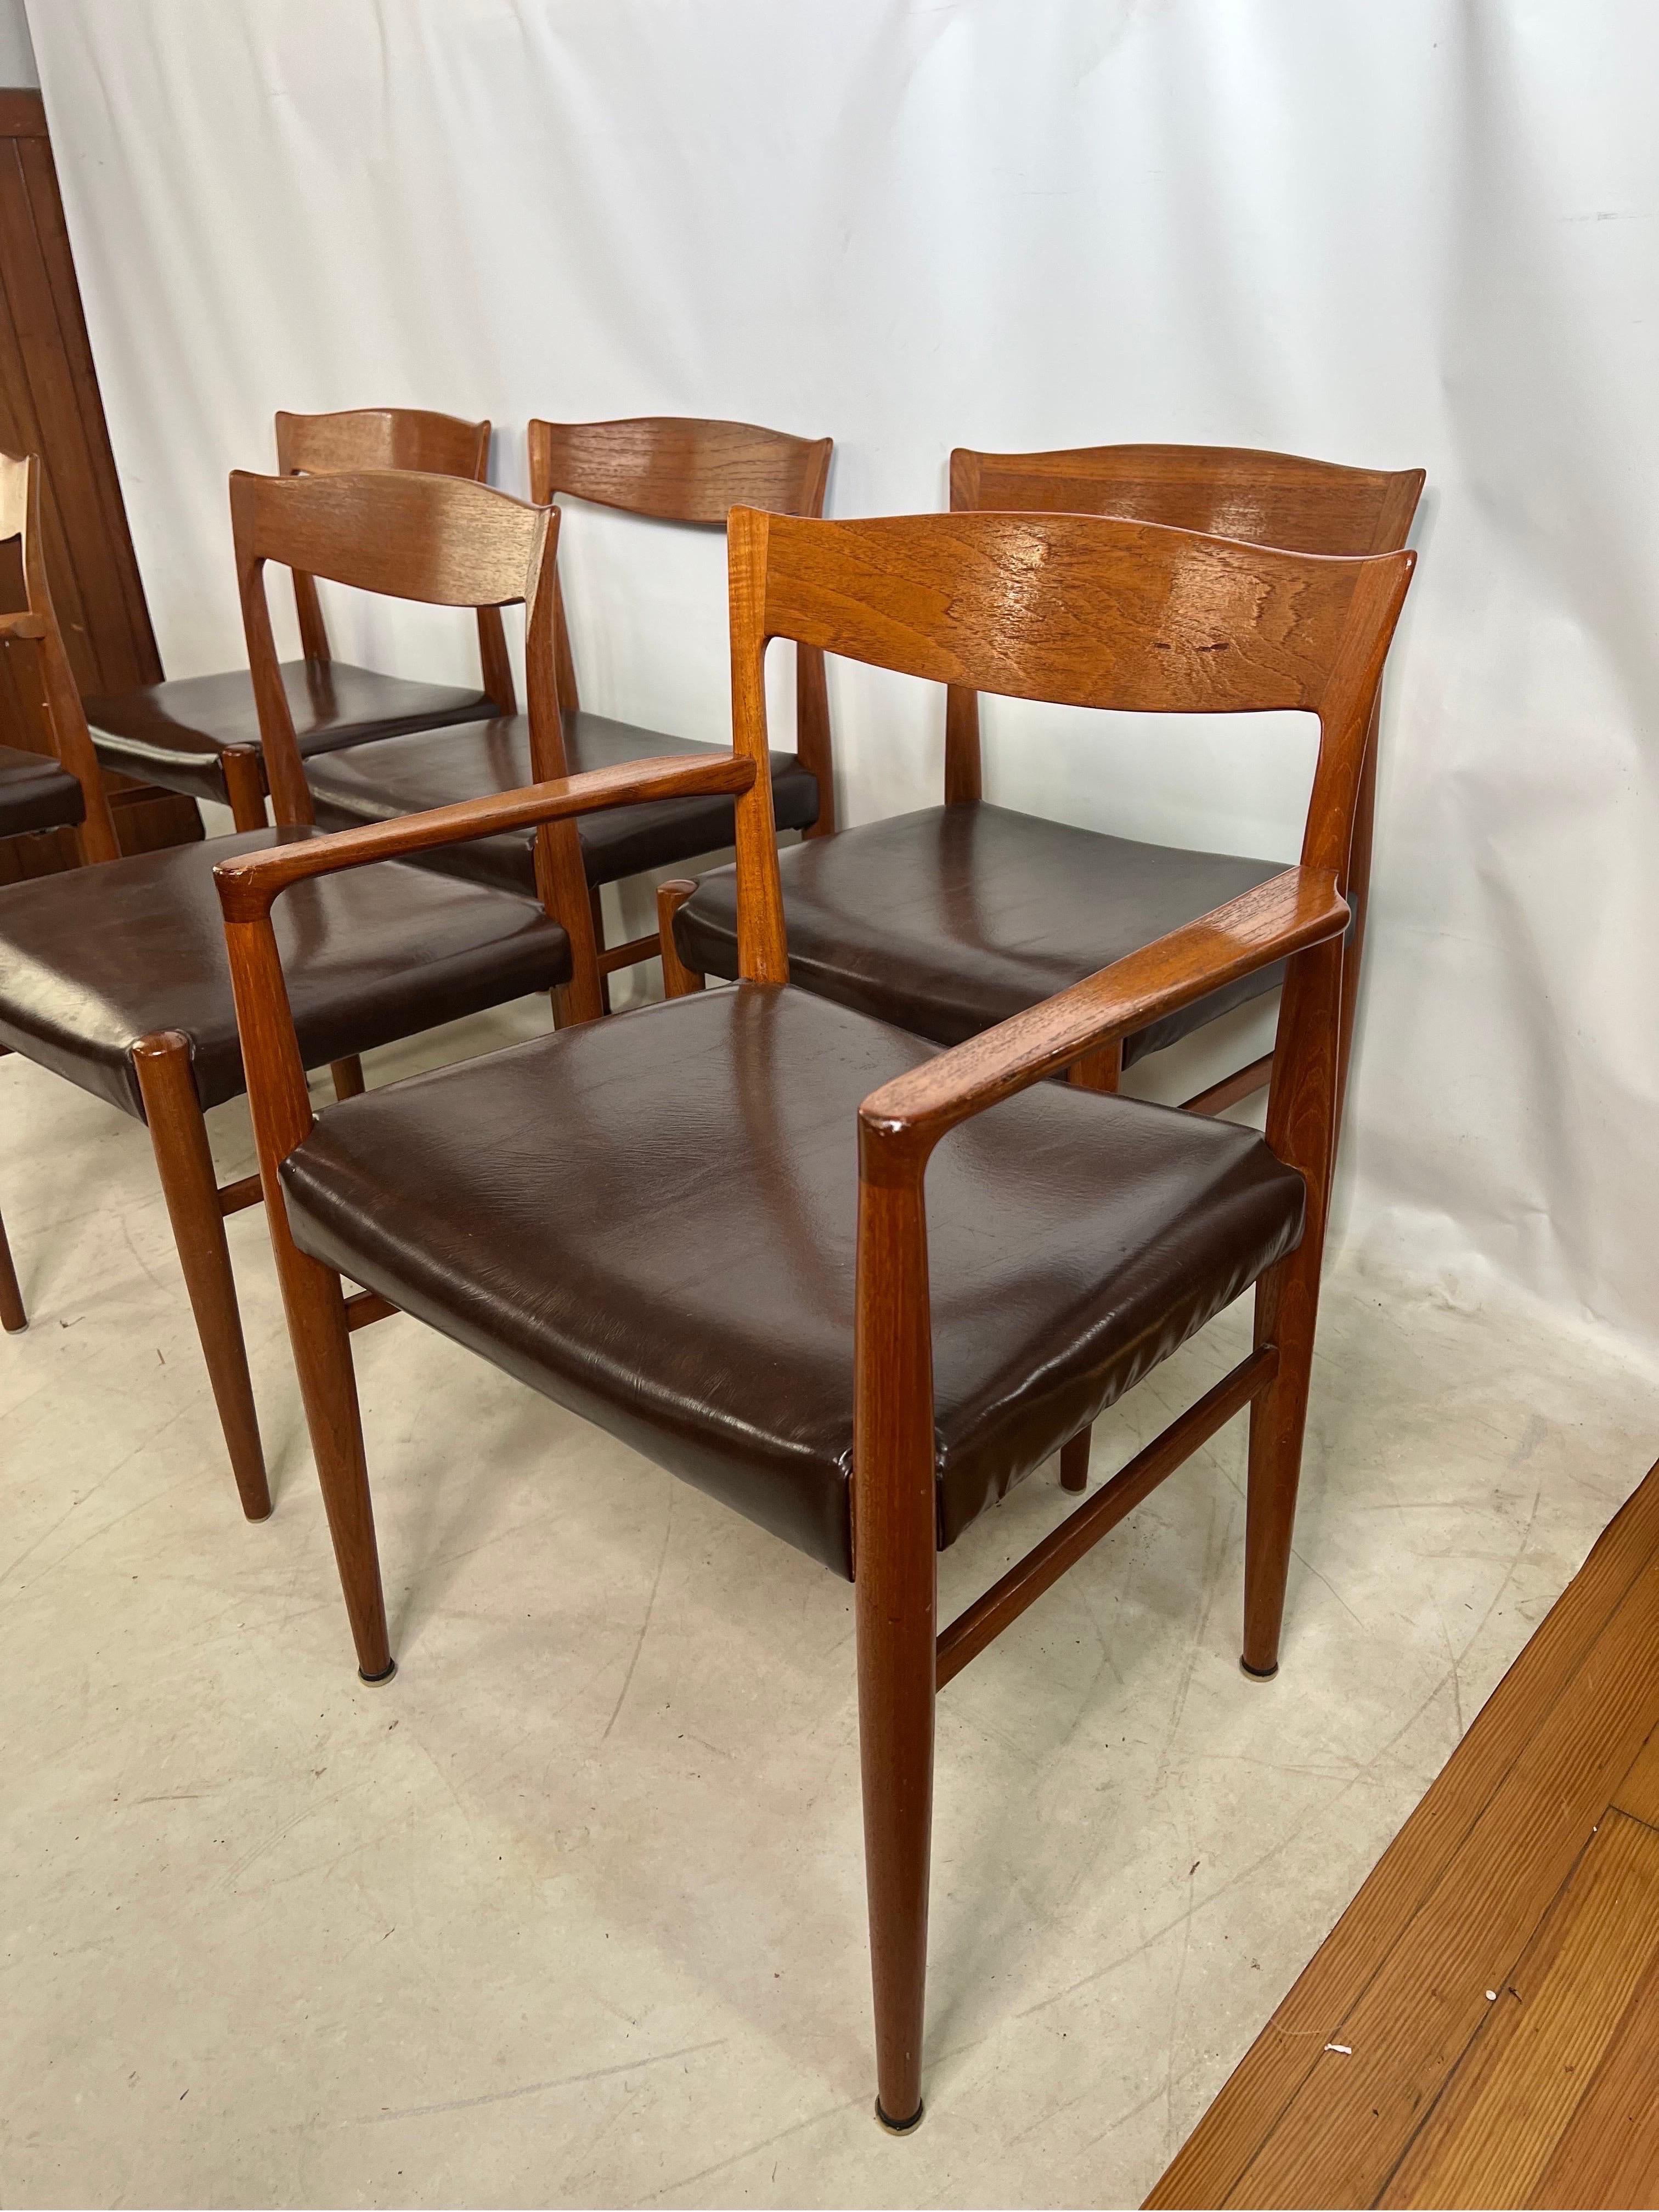 Cet ensemble de 6 chaises de salle à manger vintage en teck sculpté danois est un véritable témoignage du design et de l'artisanat du milieu du siècle. Fabriquées en bois de teck de haute qualité, ces chaises présentent un design sculptural unique